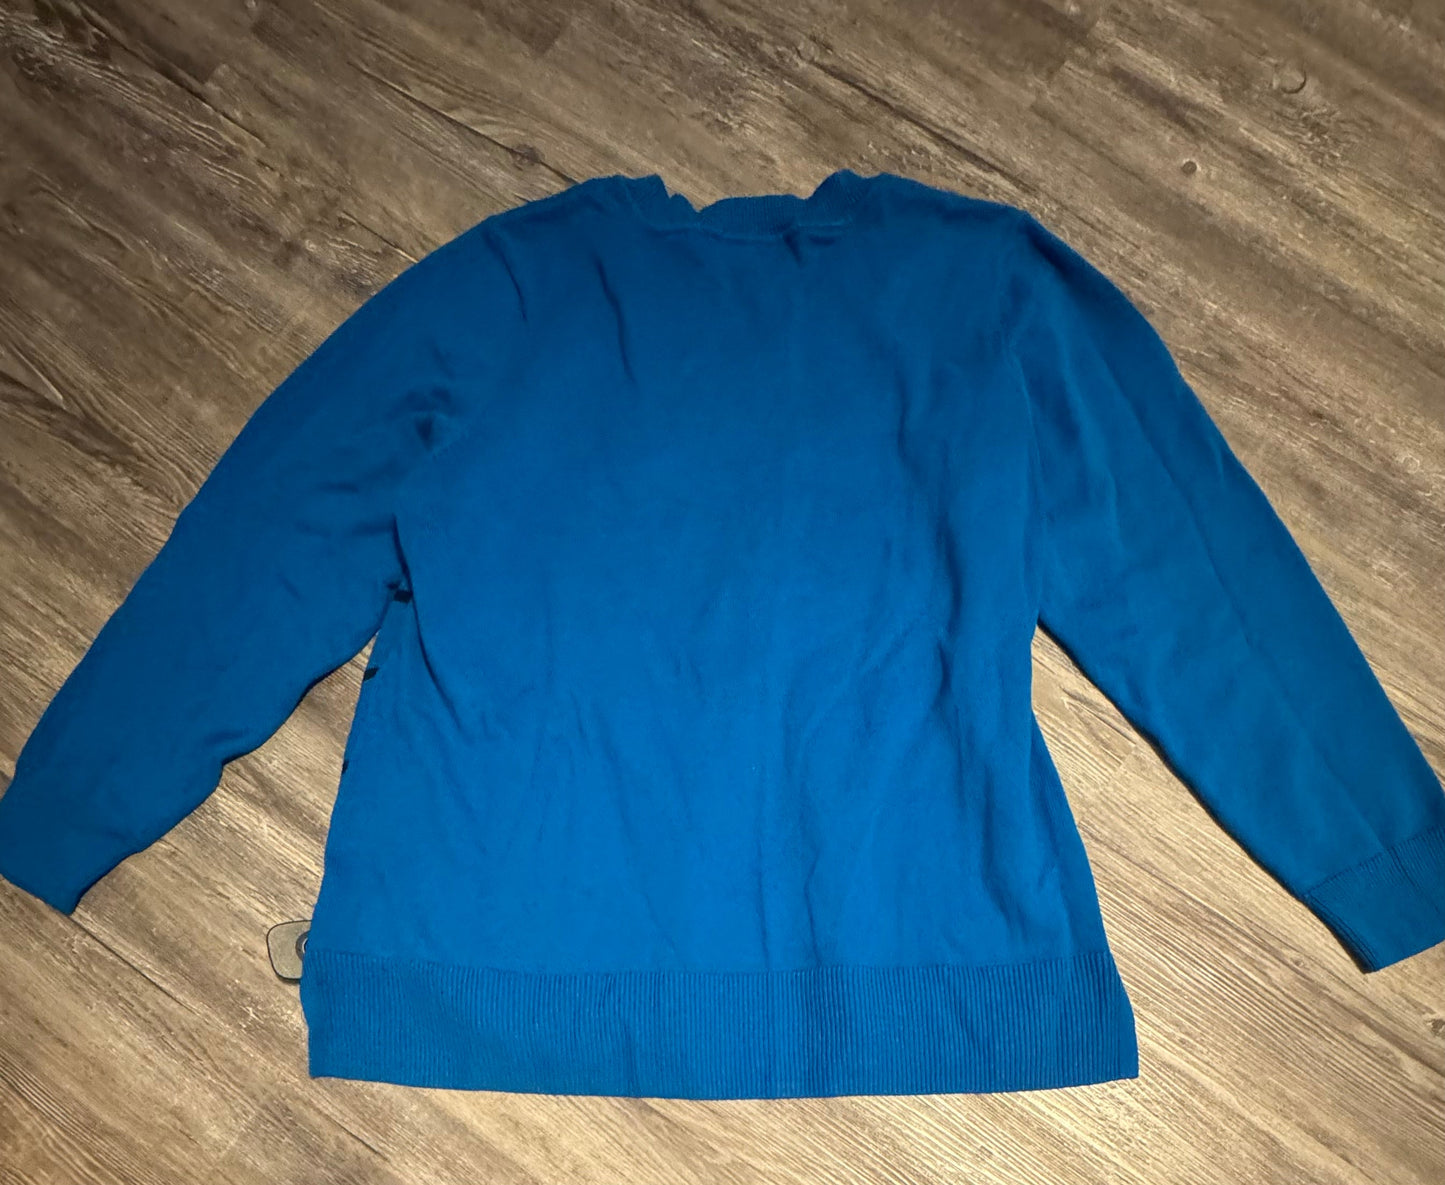 Sweater By Liz Claiborne  Size: 1x